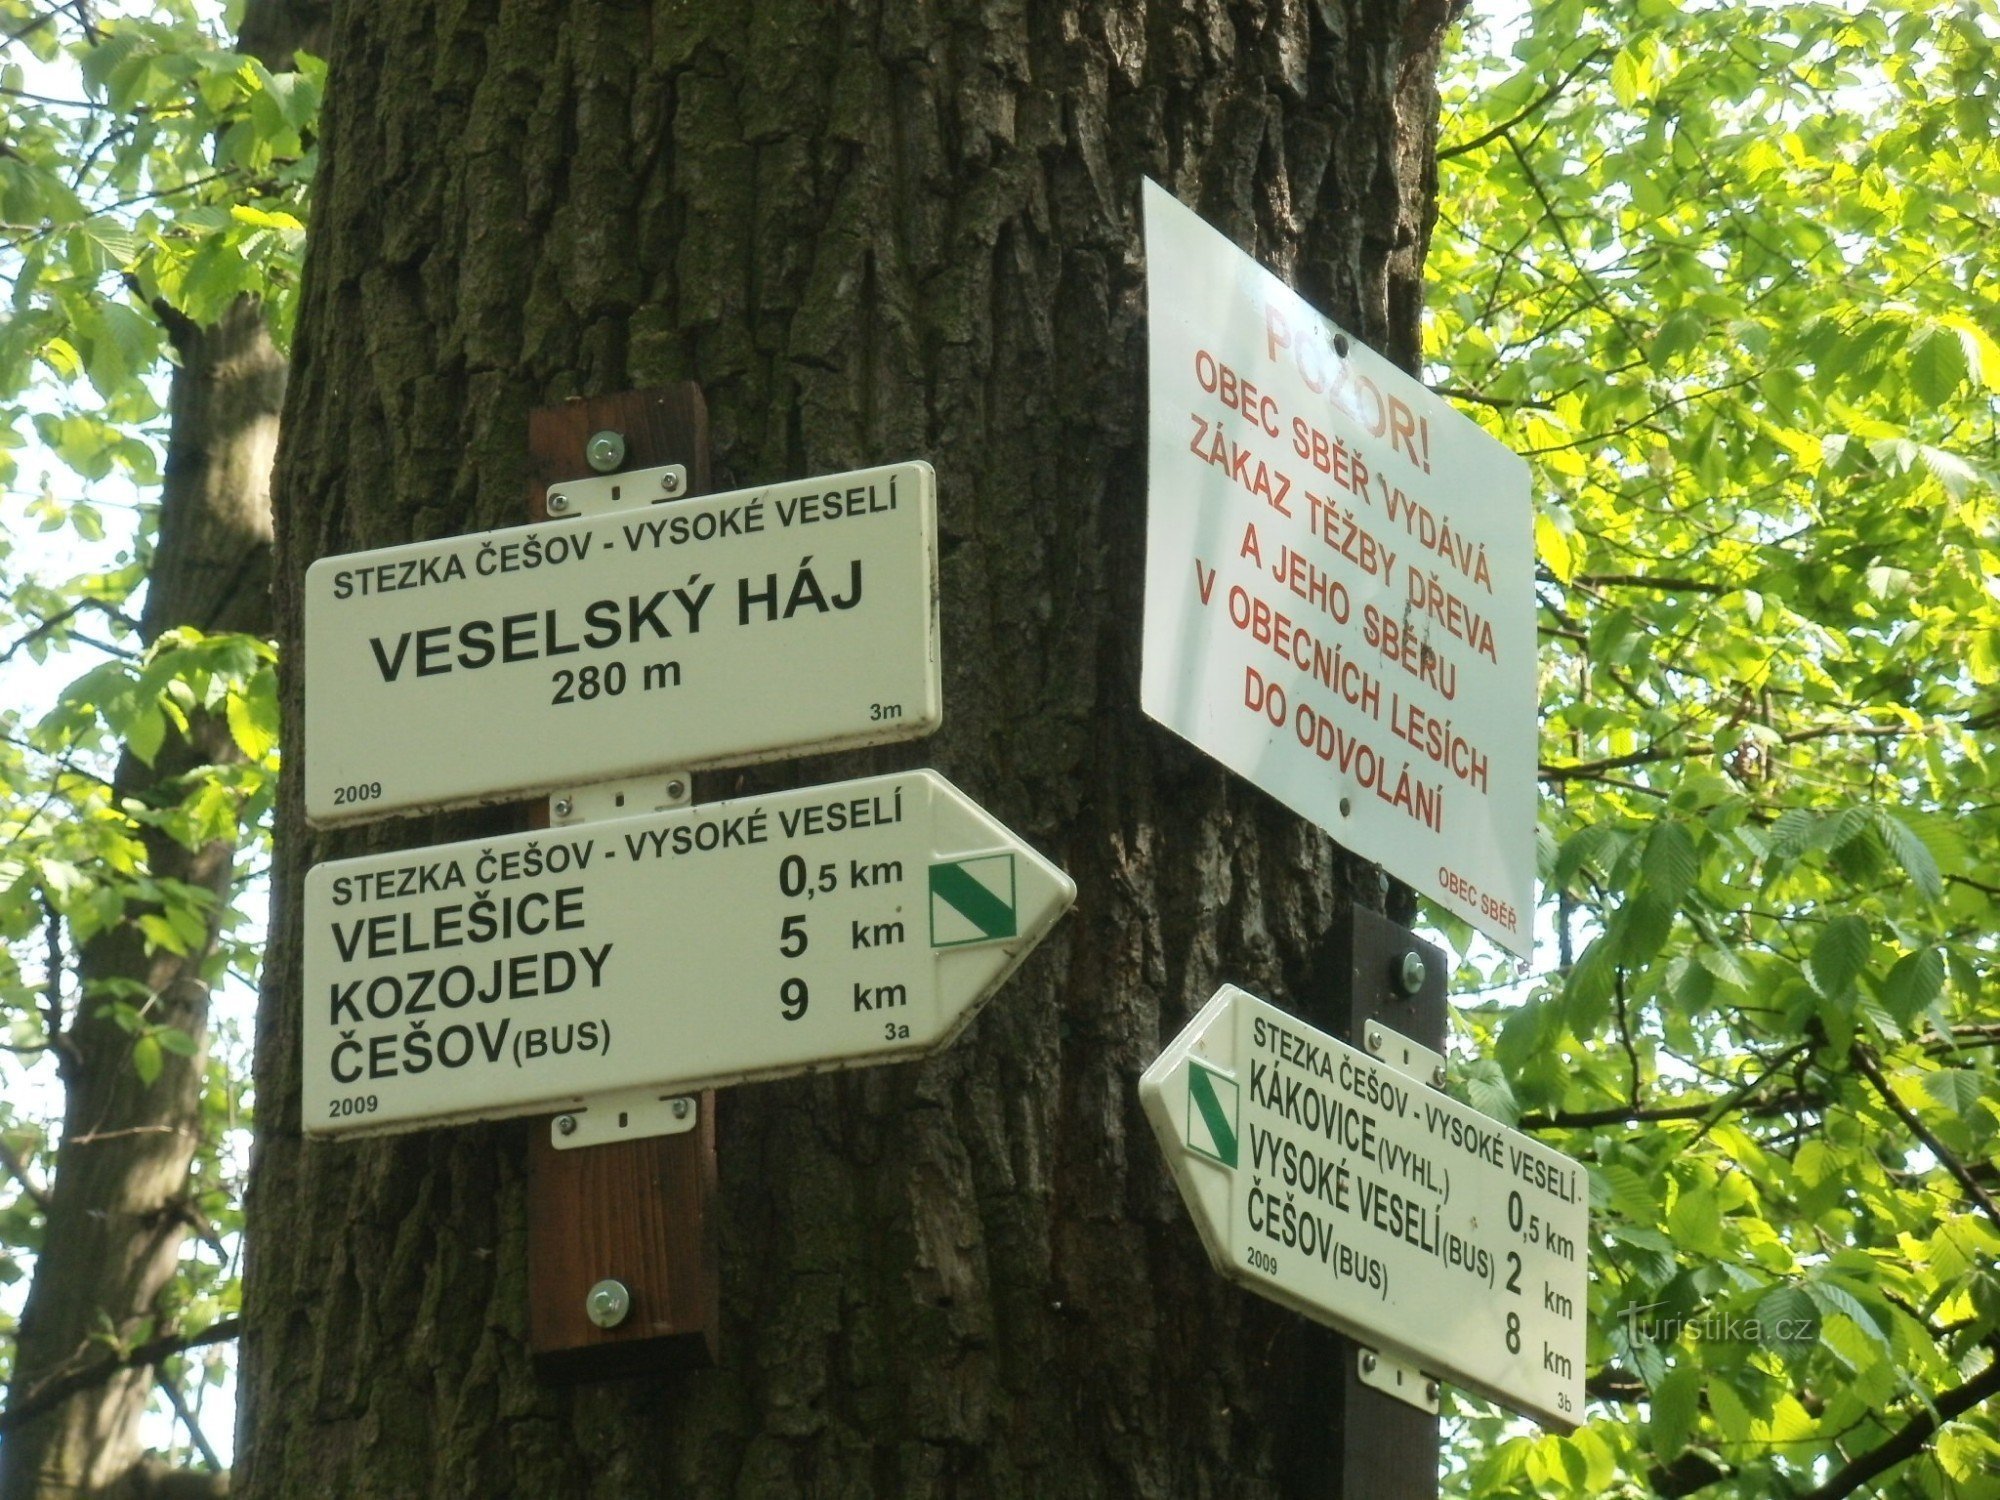 križišče NS Češov-Vysoké Veselí - Veselský háj